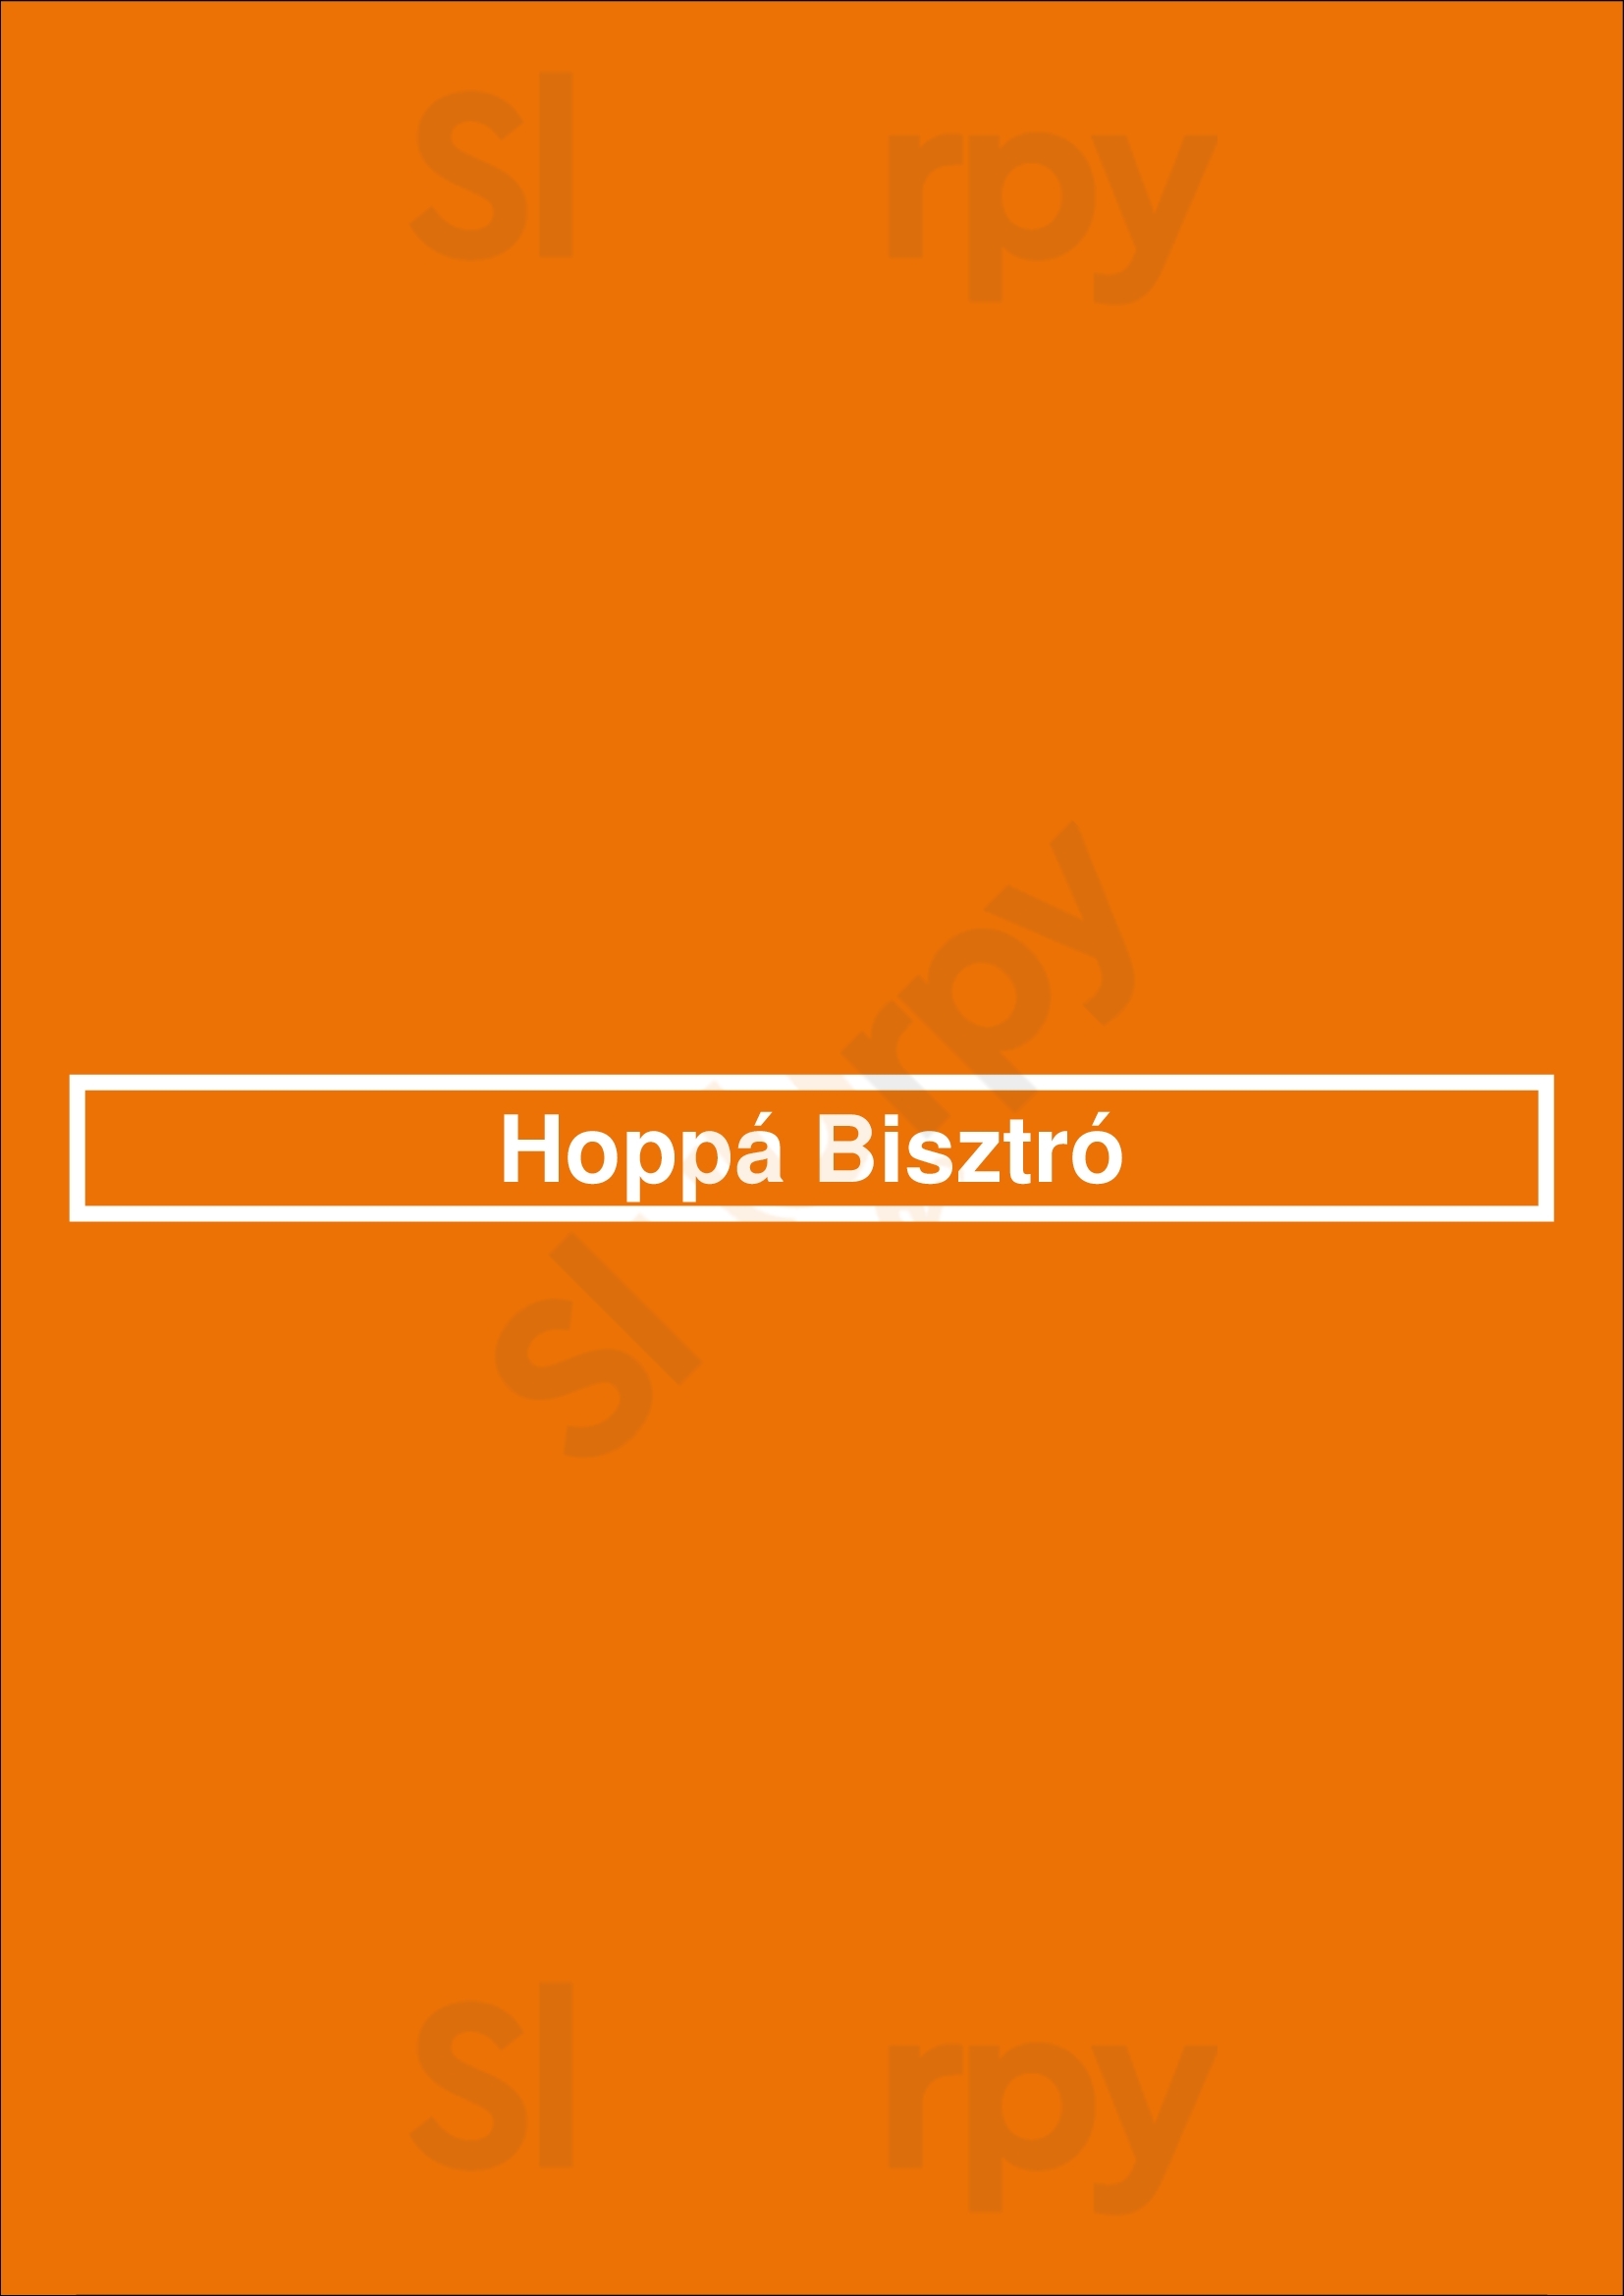 Hoppá Bisztró Budapest Menu - 1